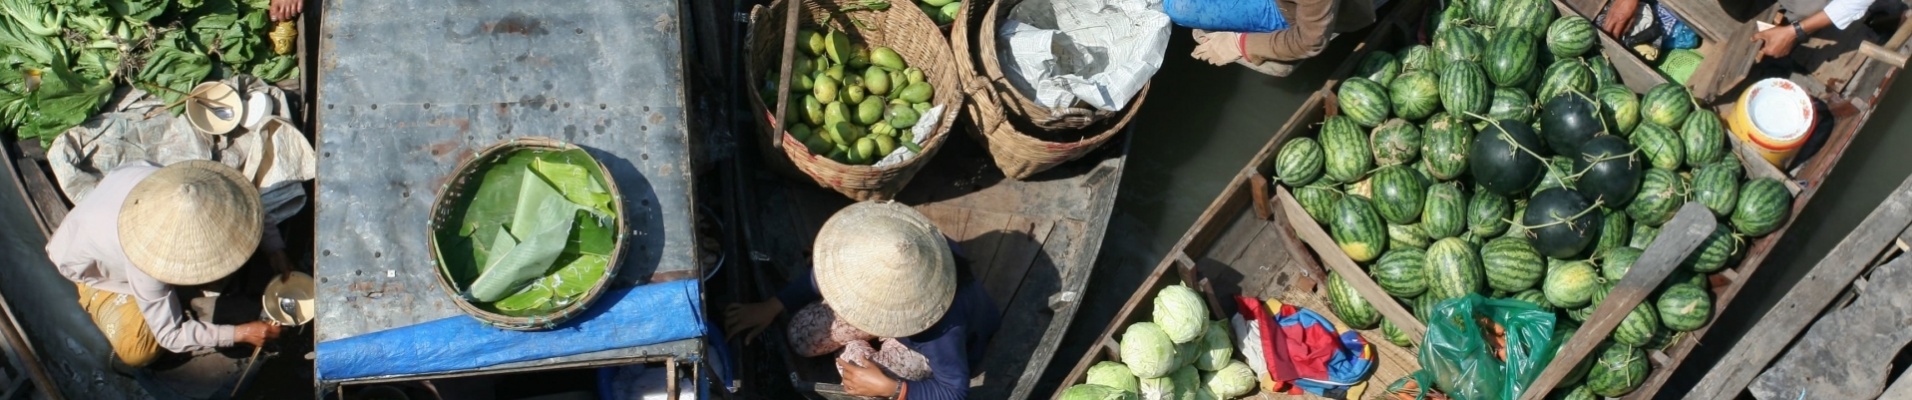 Marché flottant, Vietnam